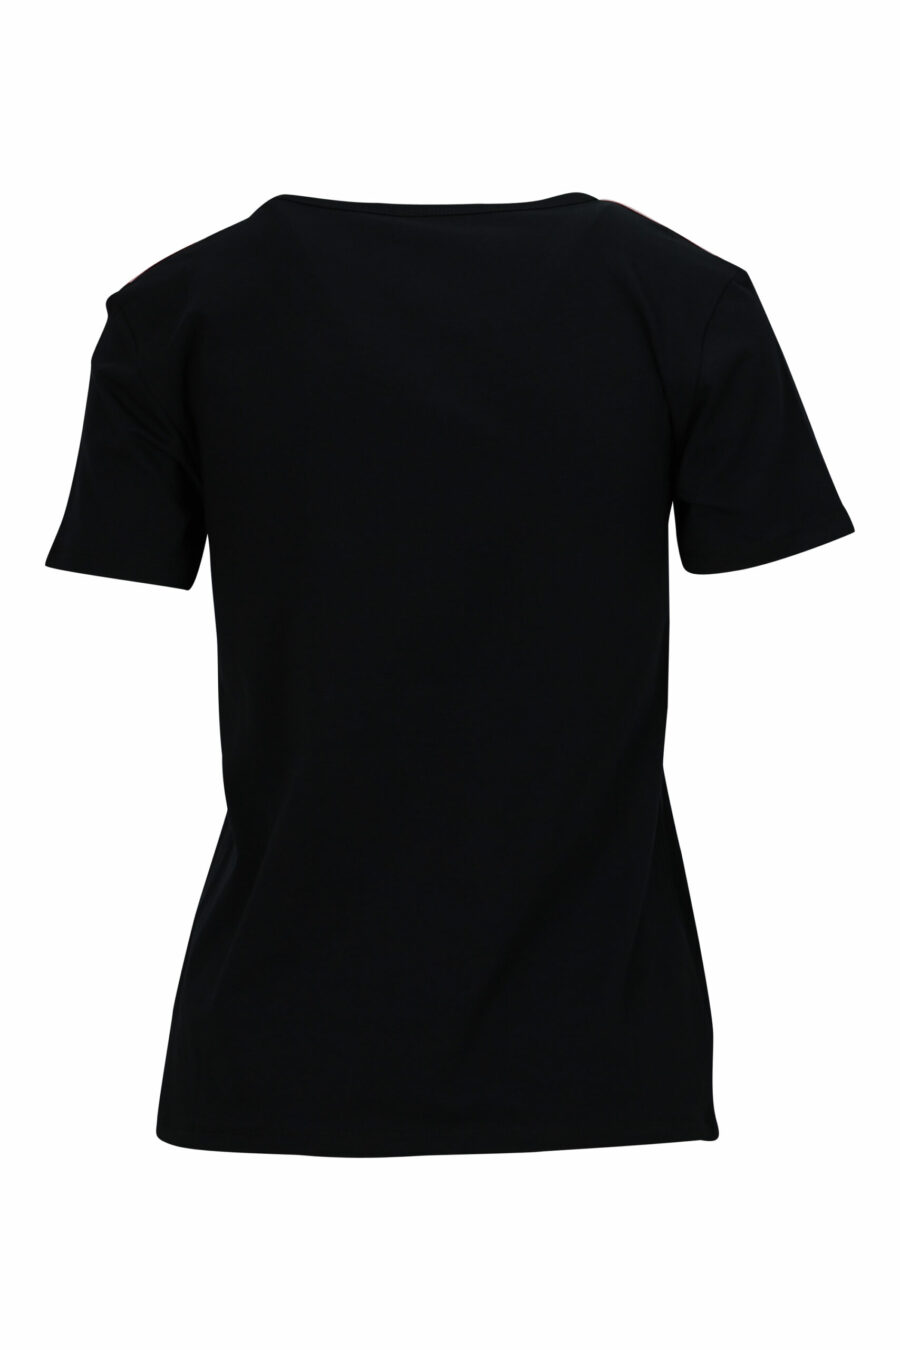 Camiseta negra con logo en cinta hombros monocromático - 667113696690 1 scaled